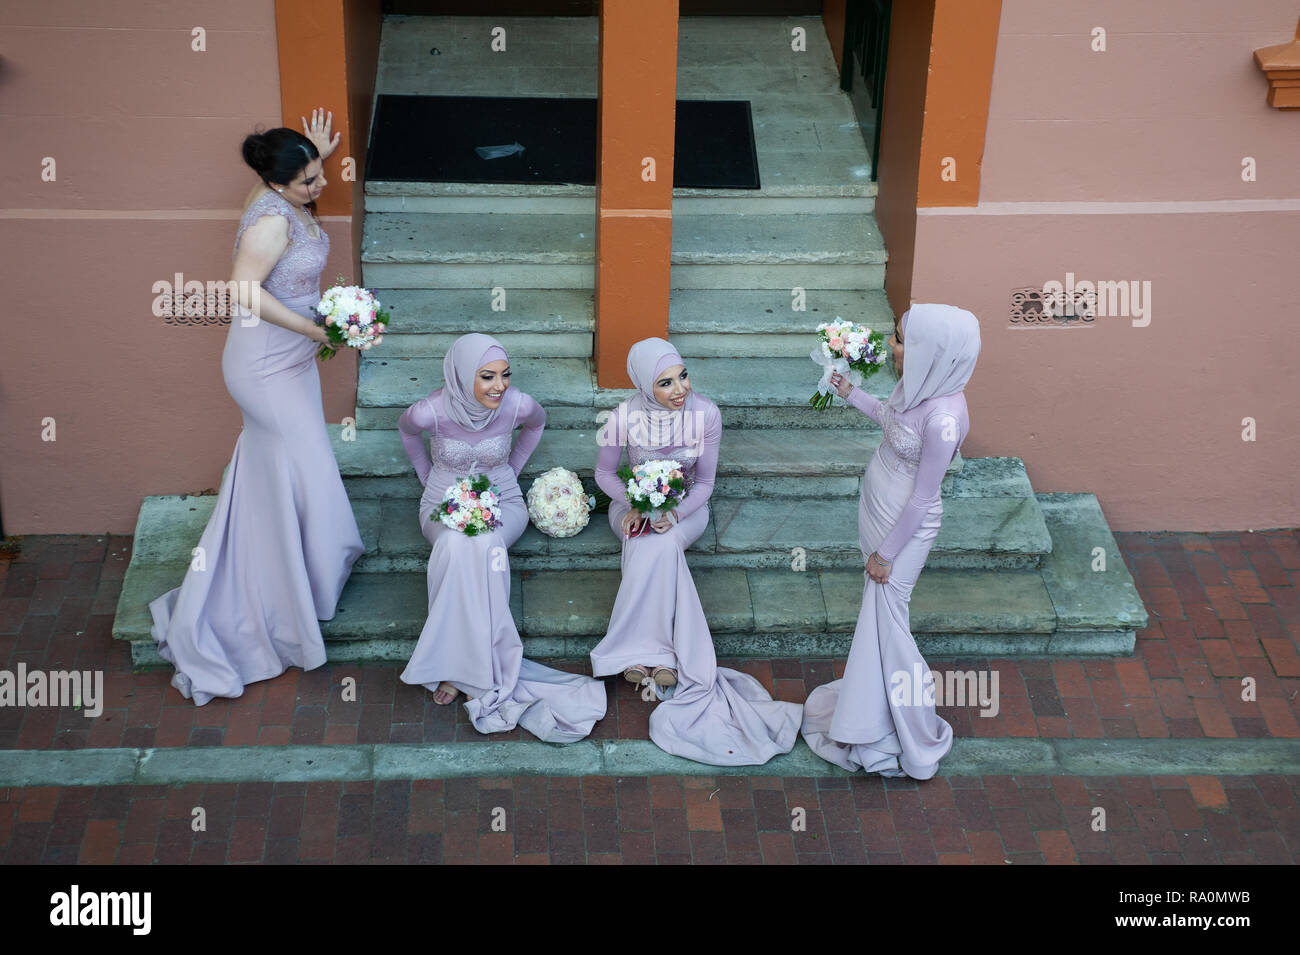 16.09.2018, Sydney, New South Wales, Australien - Eine Gruppe muslimischer Brautjungfern sitzt auf den Stufen eines Gebaeudes im Stadtviertel der Rock Stockfoto